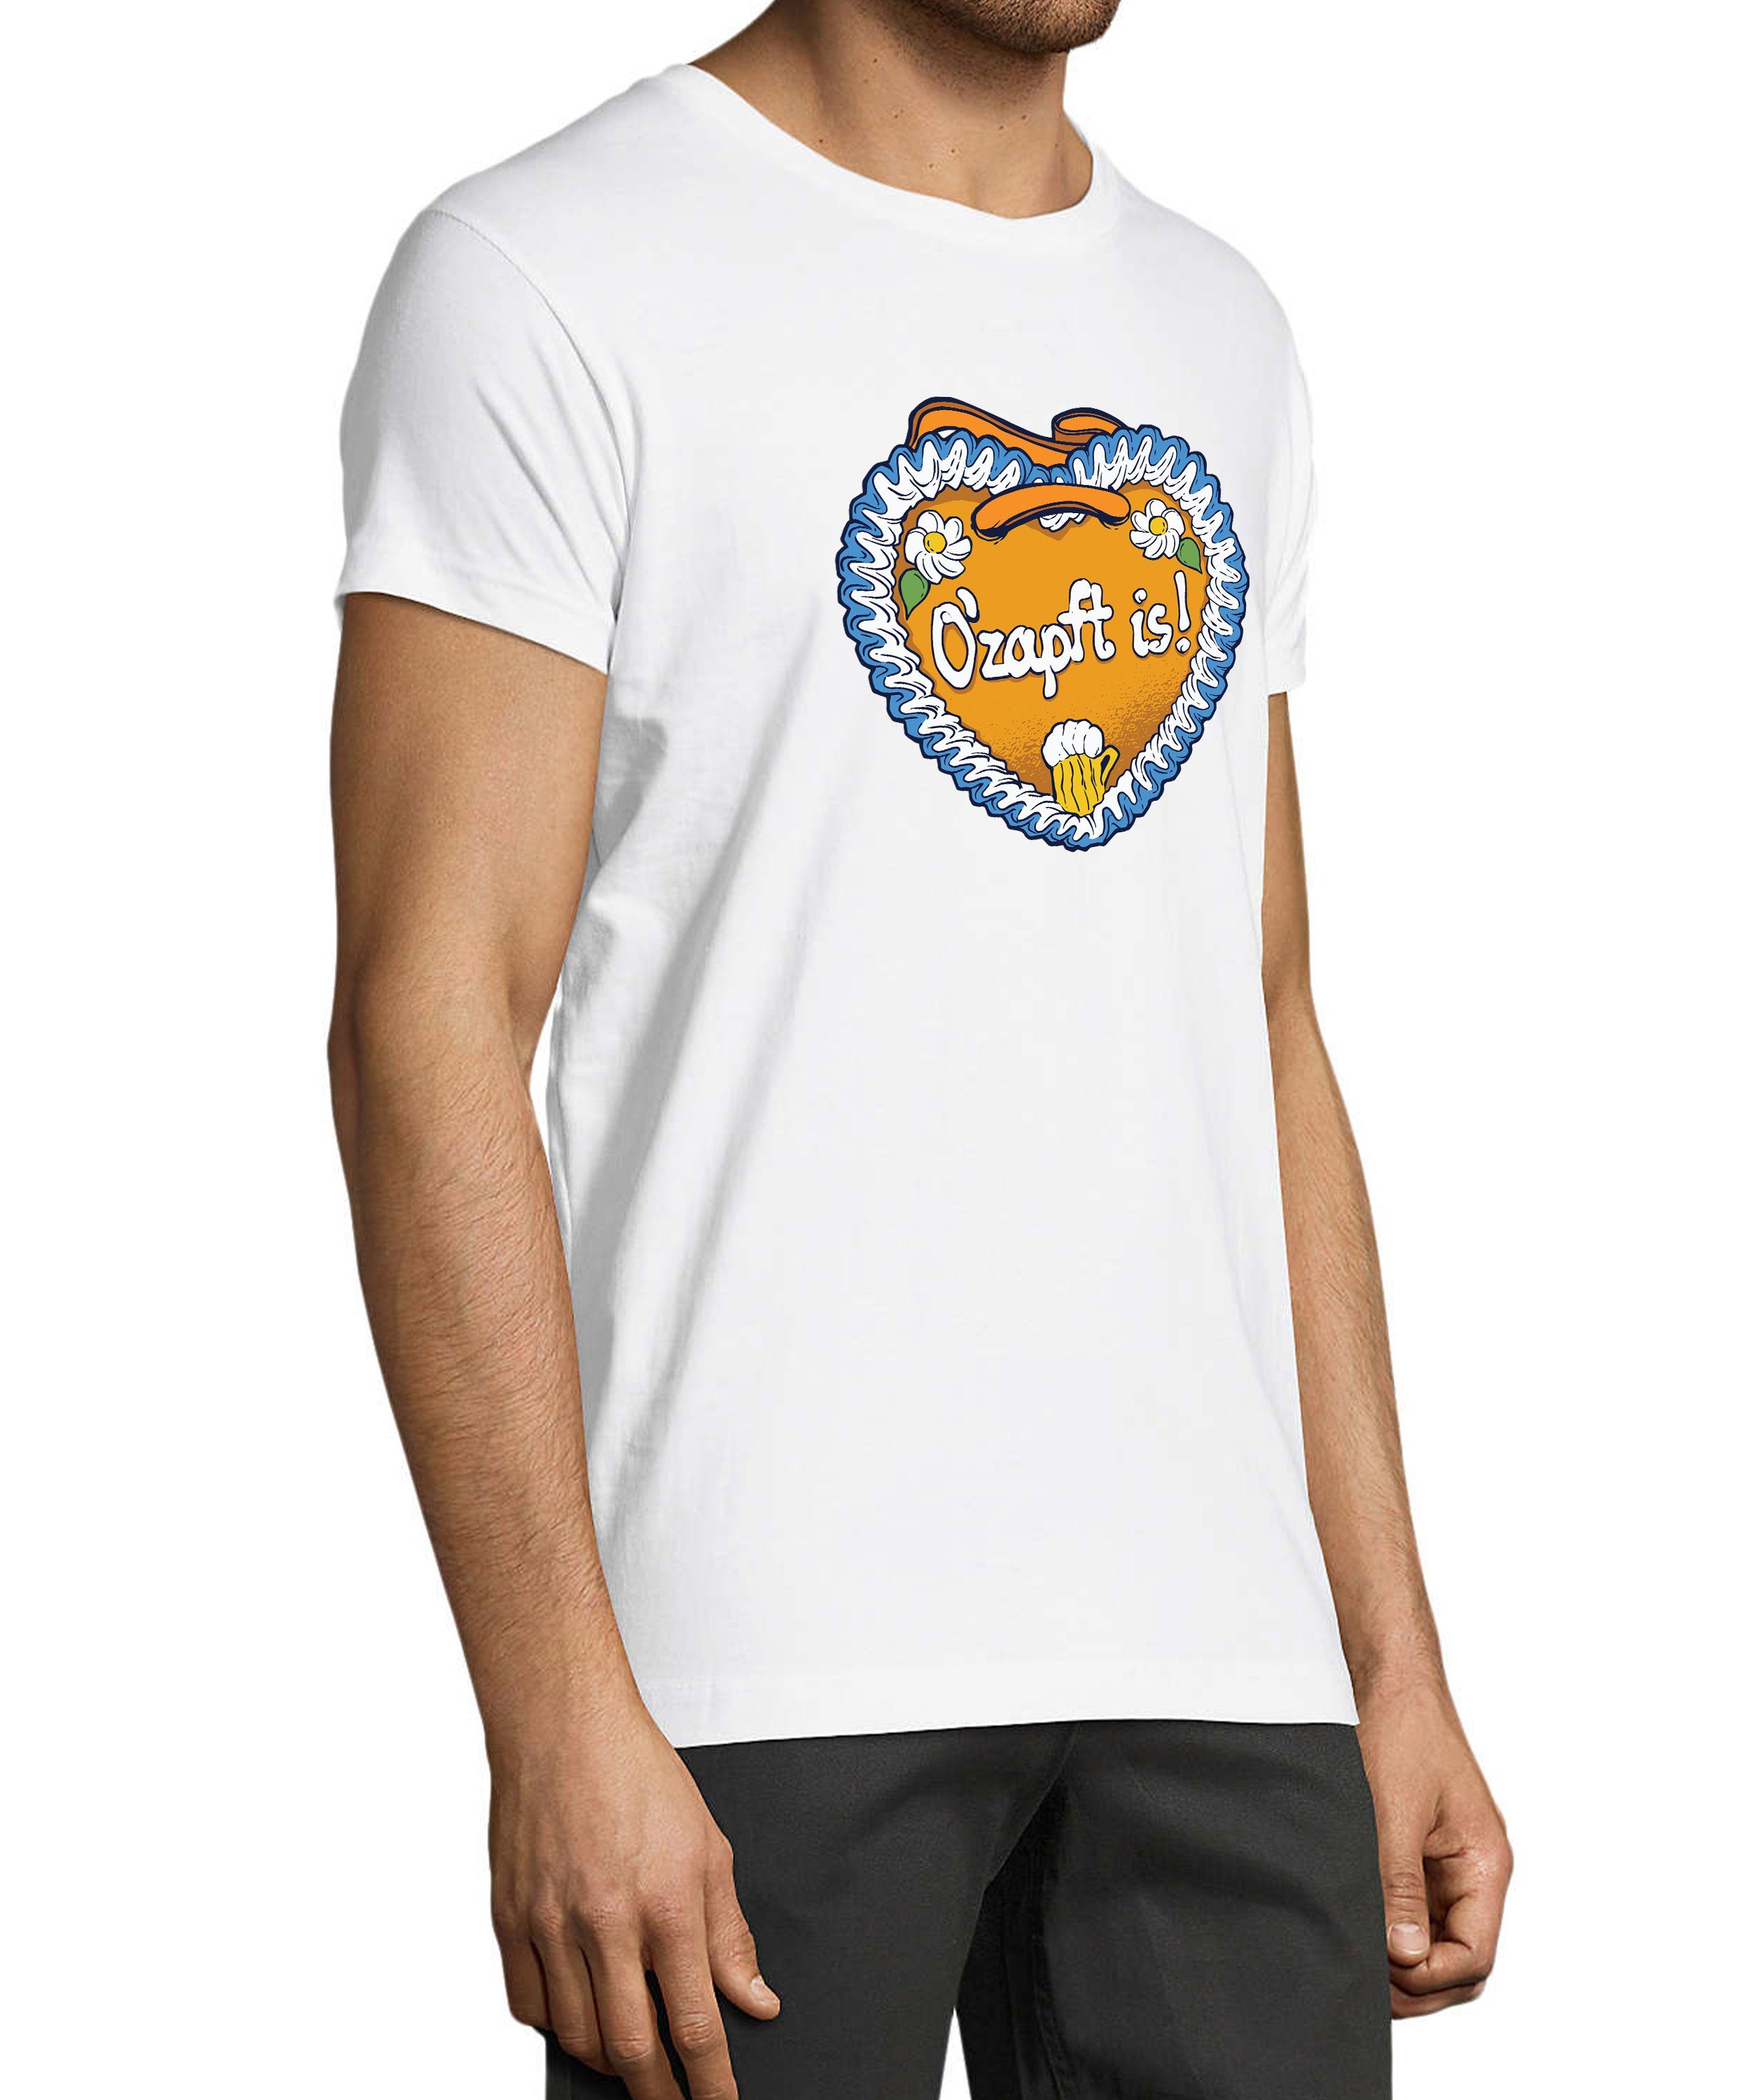 Trinkshirt Regular Herren Aufdruck - Print weiss Baumwollshirt is Fun Shirt mit MyDesign24 T-Shirt O'Zapft i313 Fit,